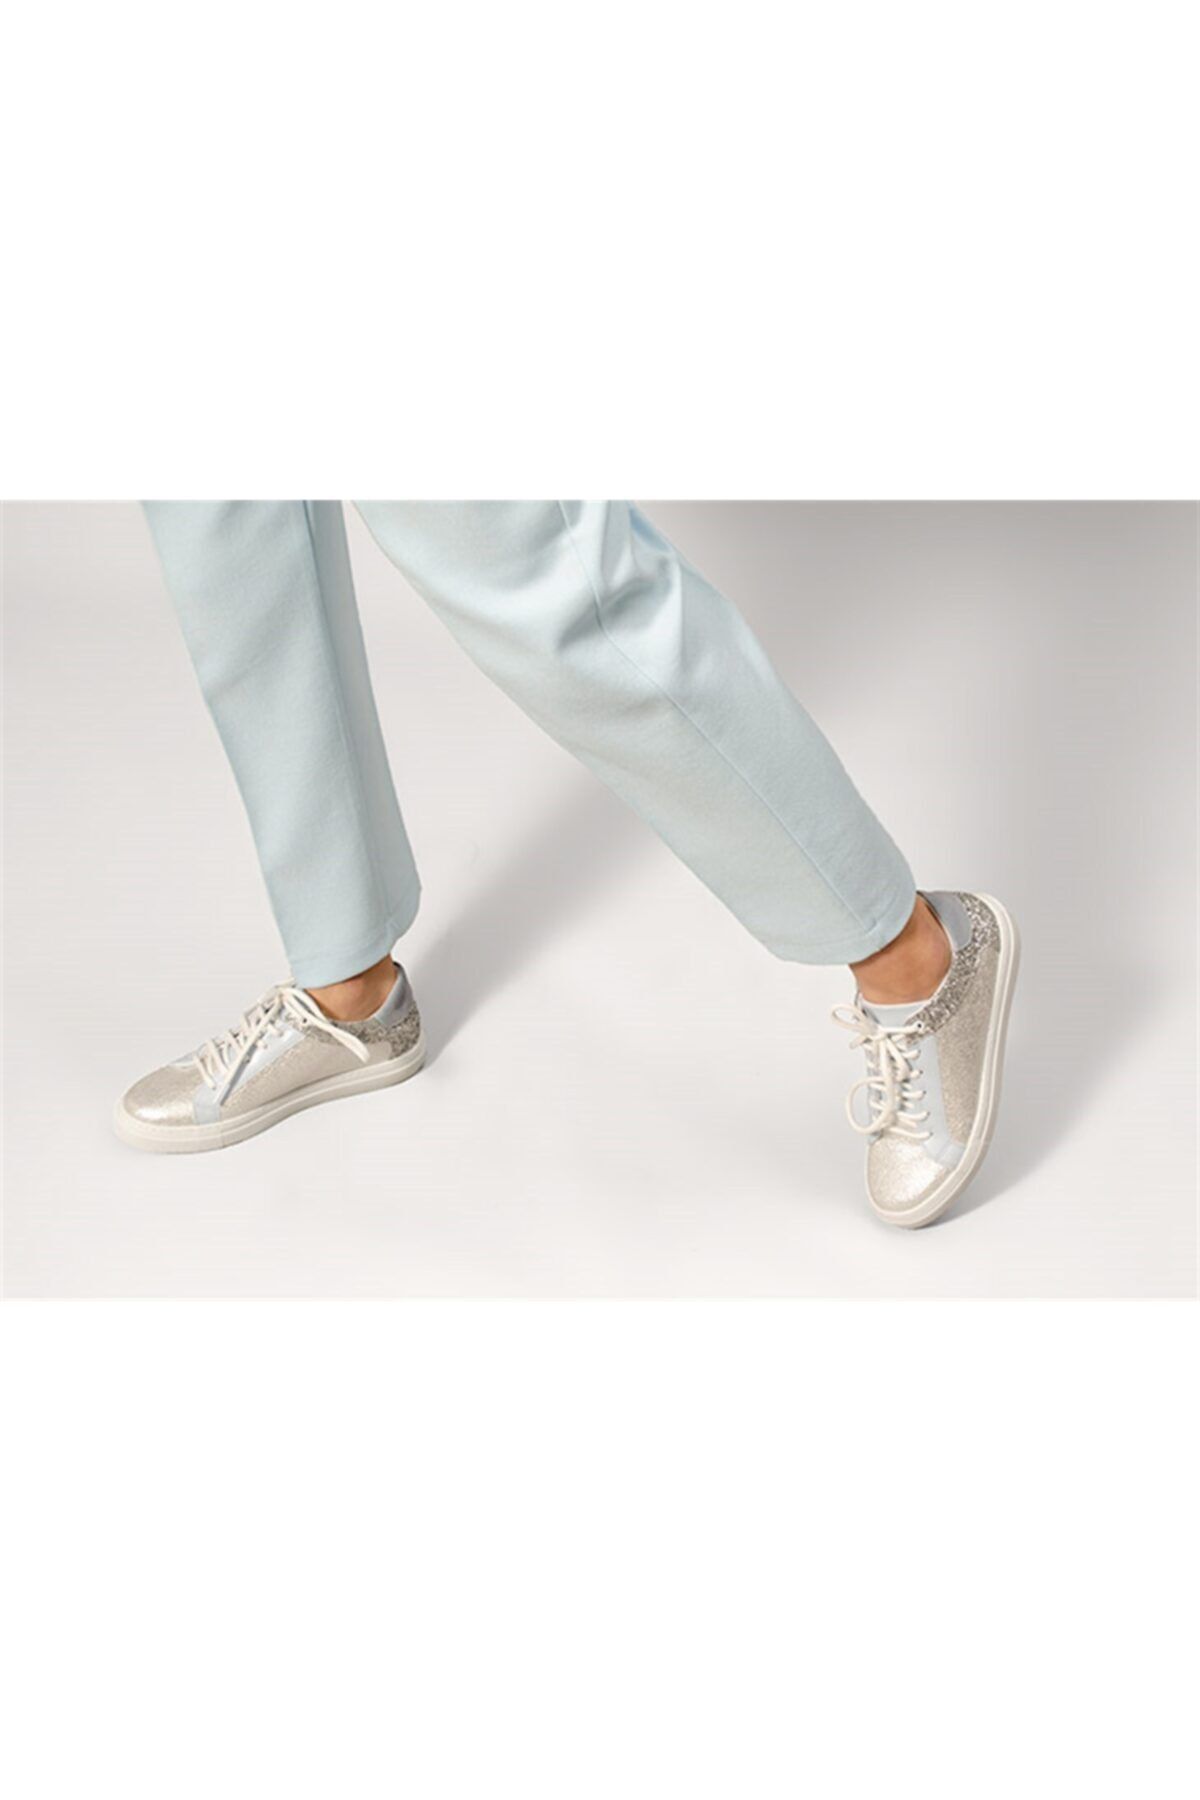 Shoes & More Kadın Gümüş Renk Sim Detaylı Spor Ayakkabı